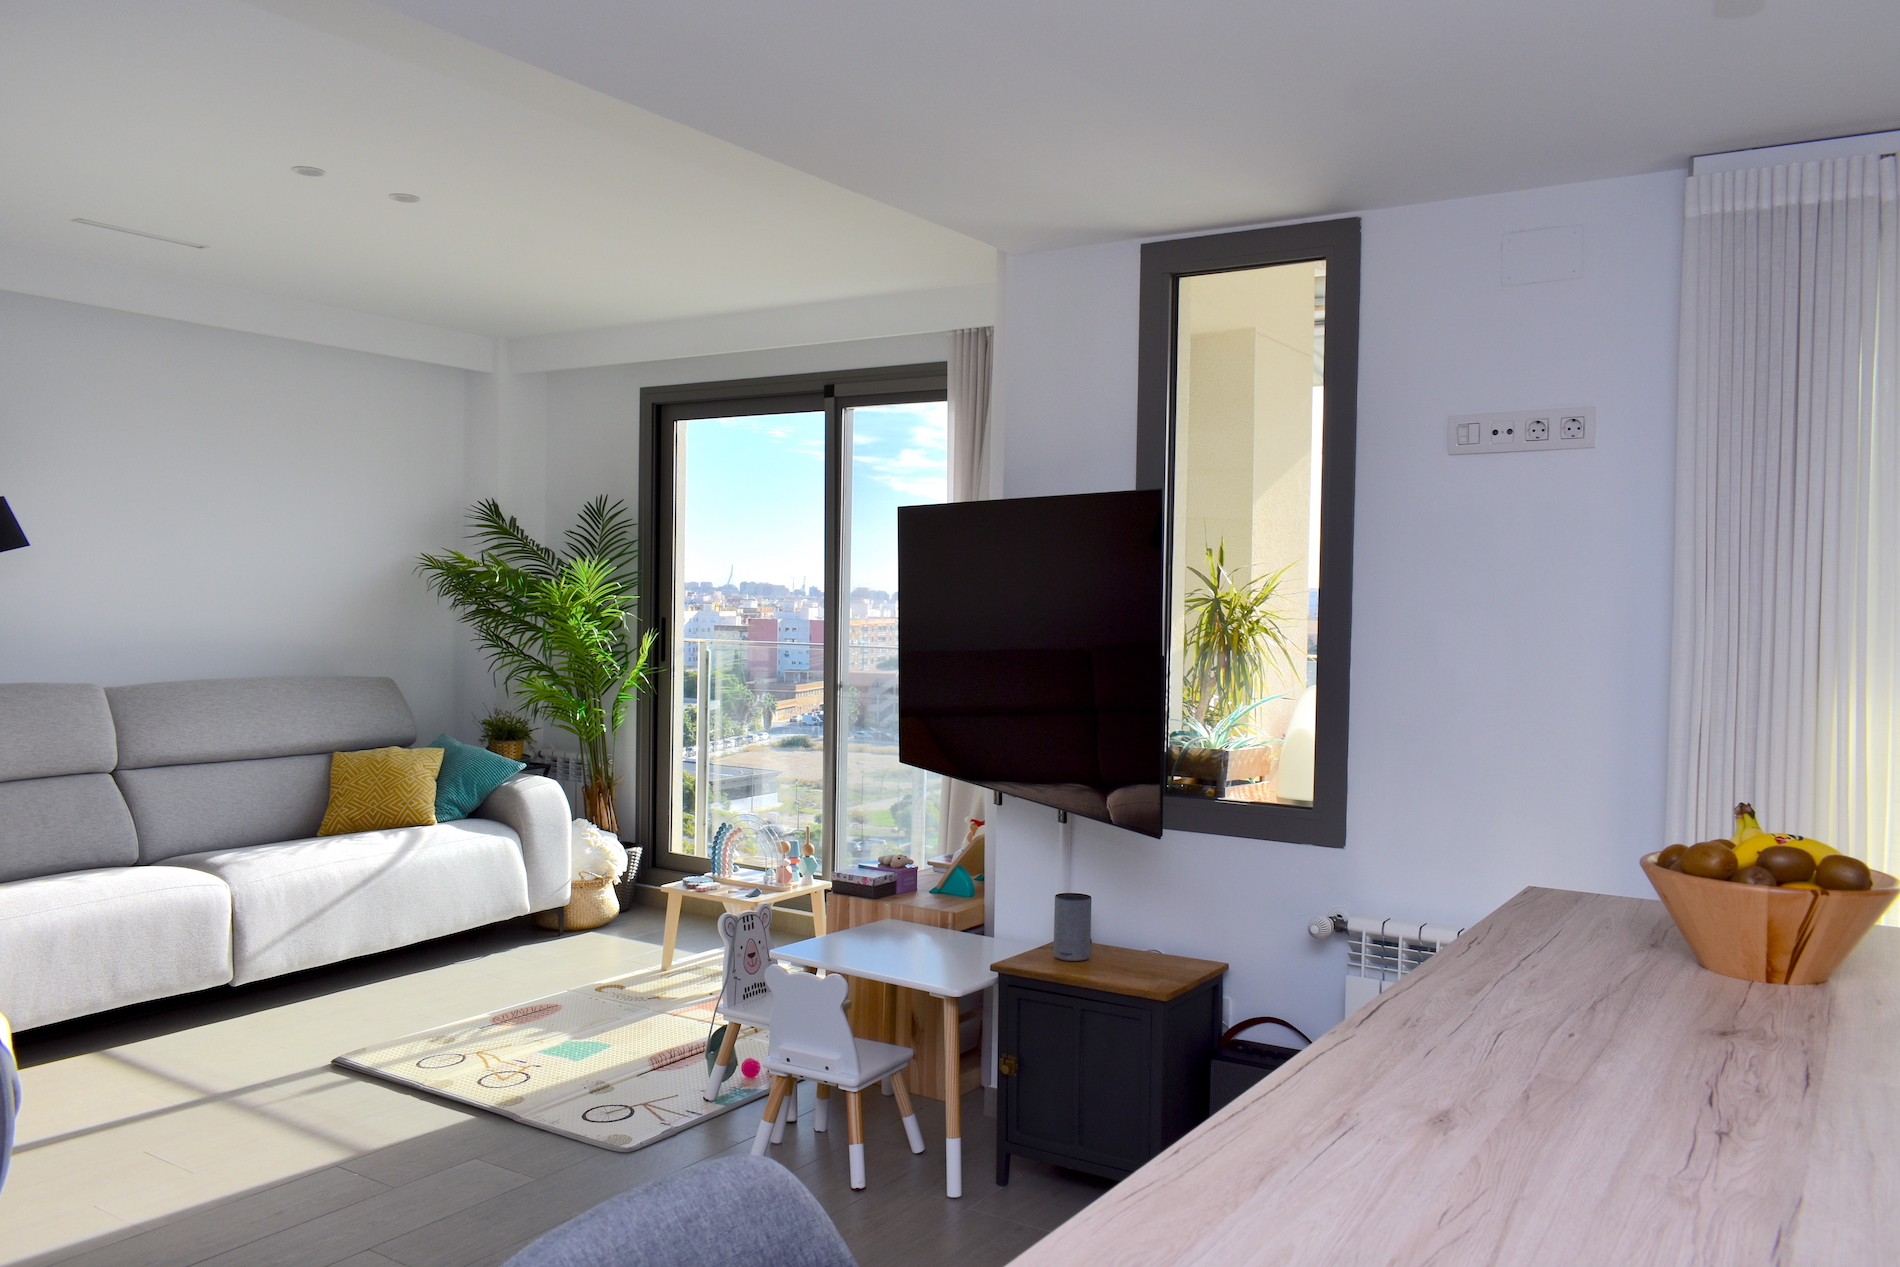 Niesamowite nowoczesne mieszkanie z zapierającymi dech w piersiach widokami w Walencji